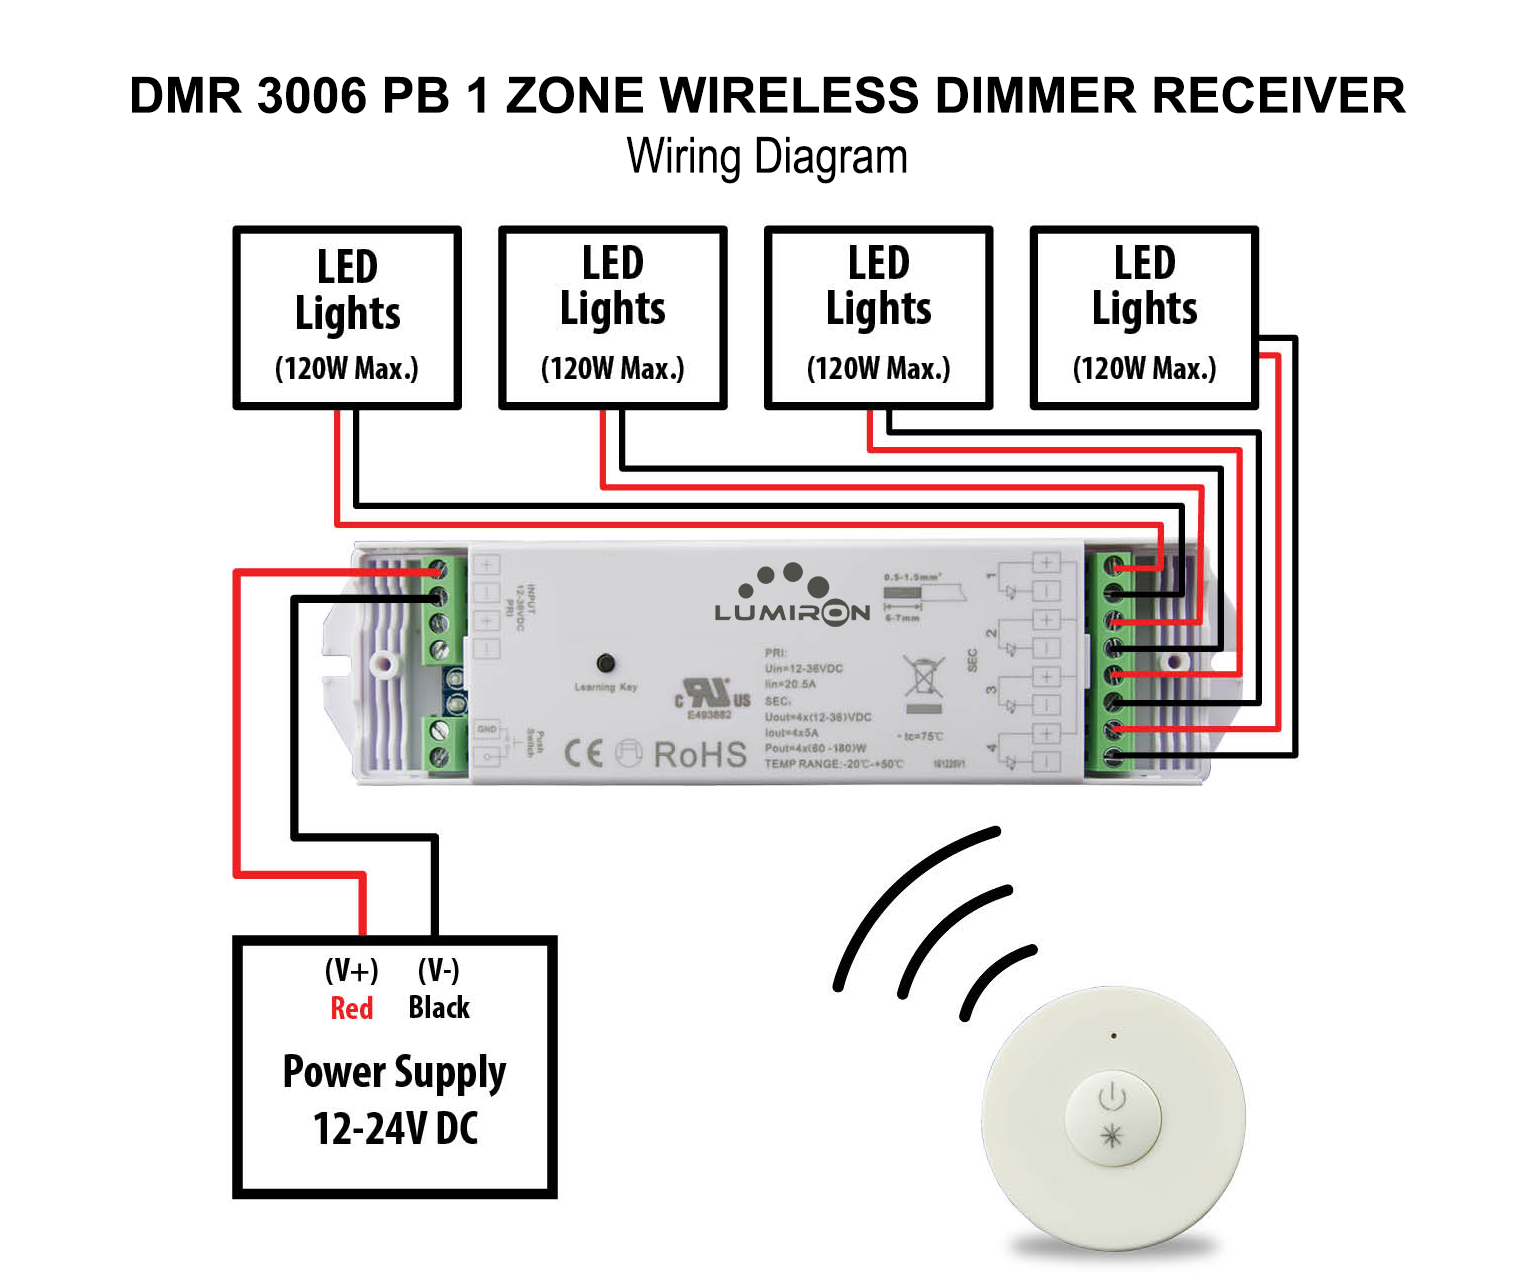 DMR-3006-PB-1-Zone-Wireless-Dimmer-Receiver-Wiring-Diagram